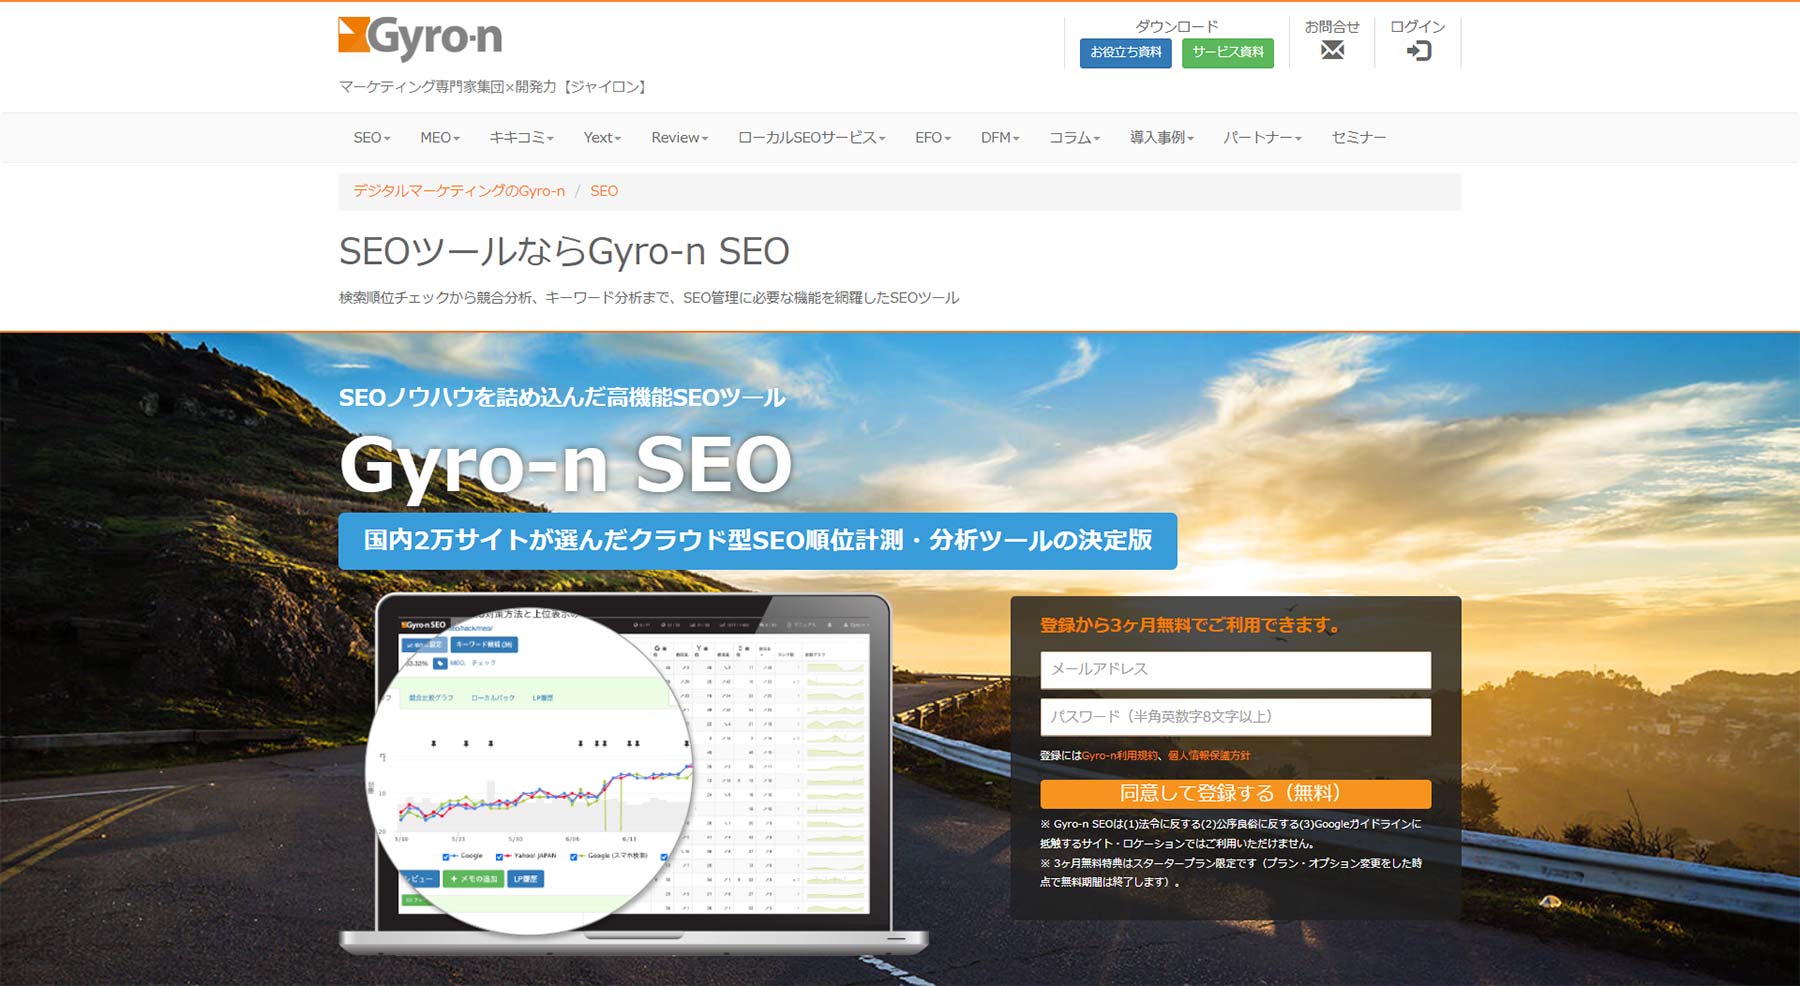 Gyro-n SEO公式Webサイト